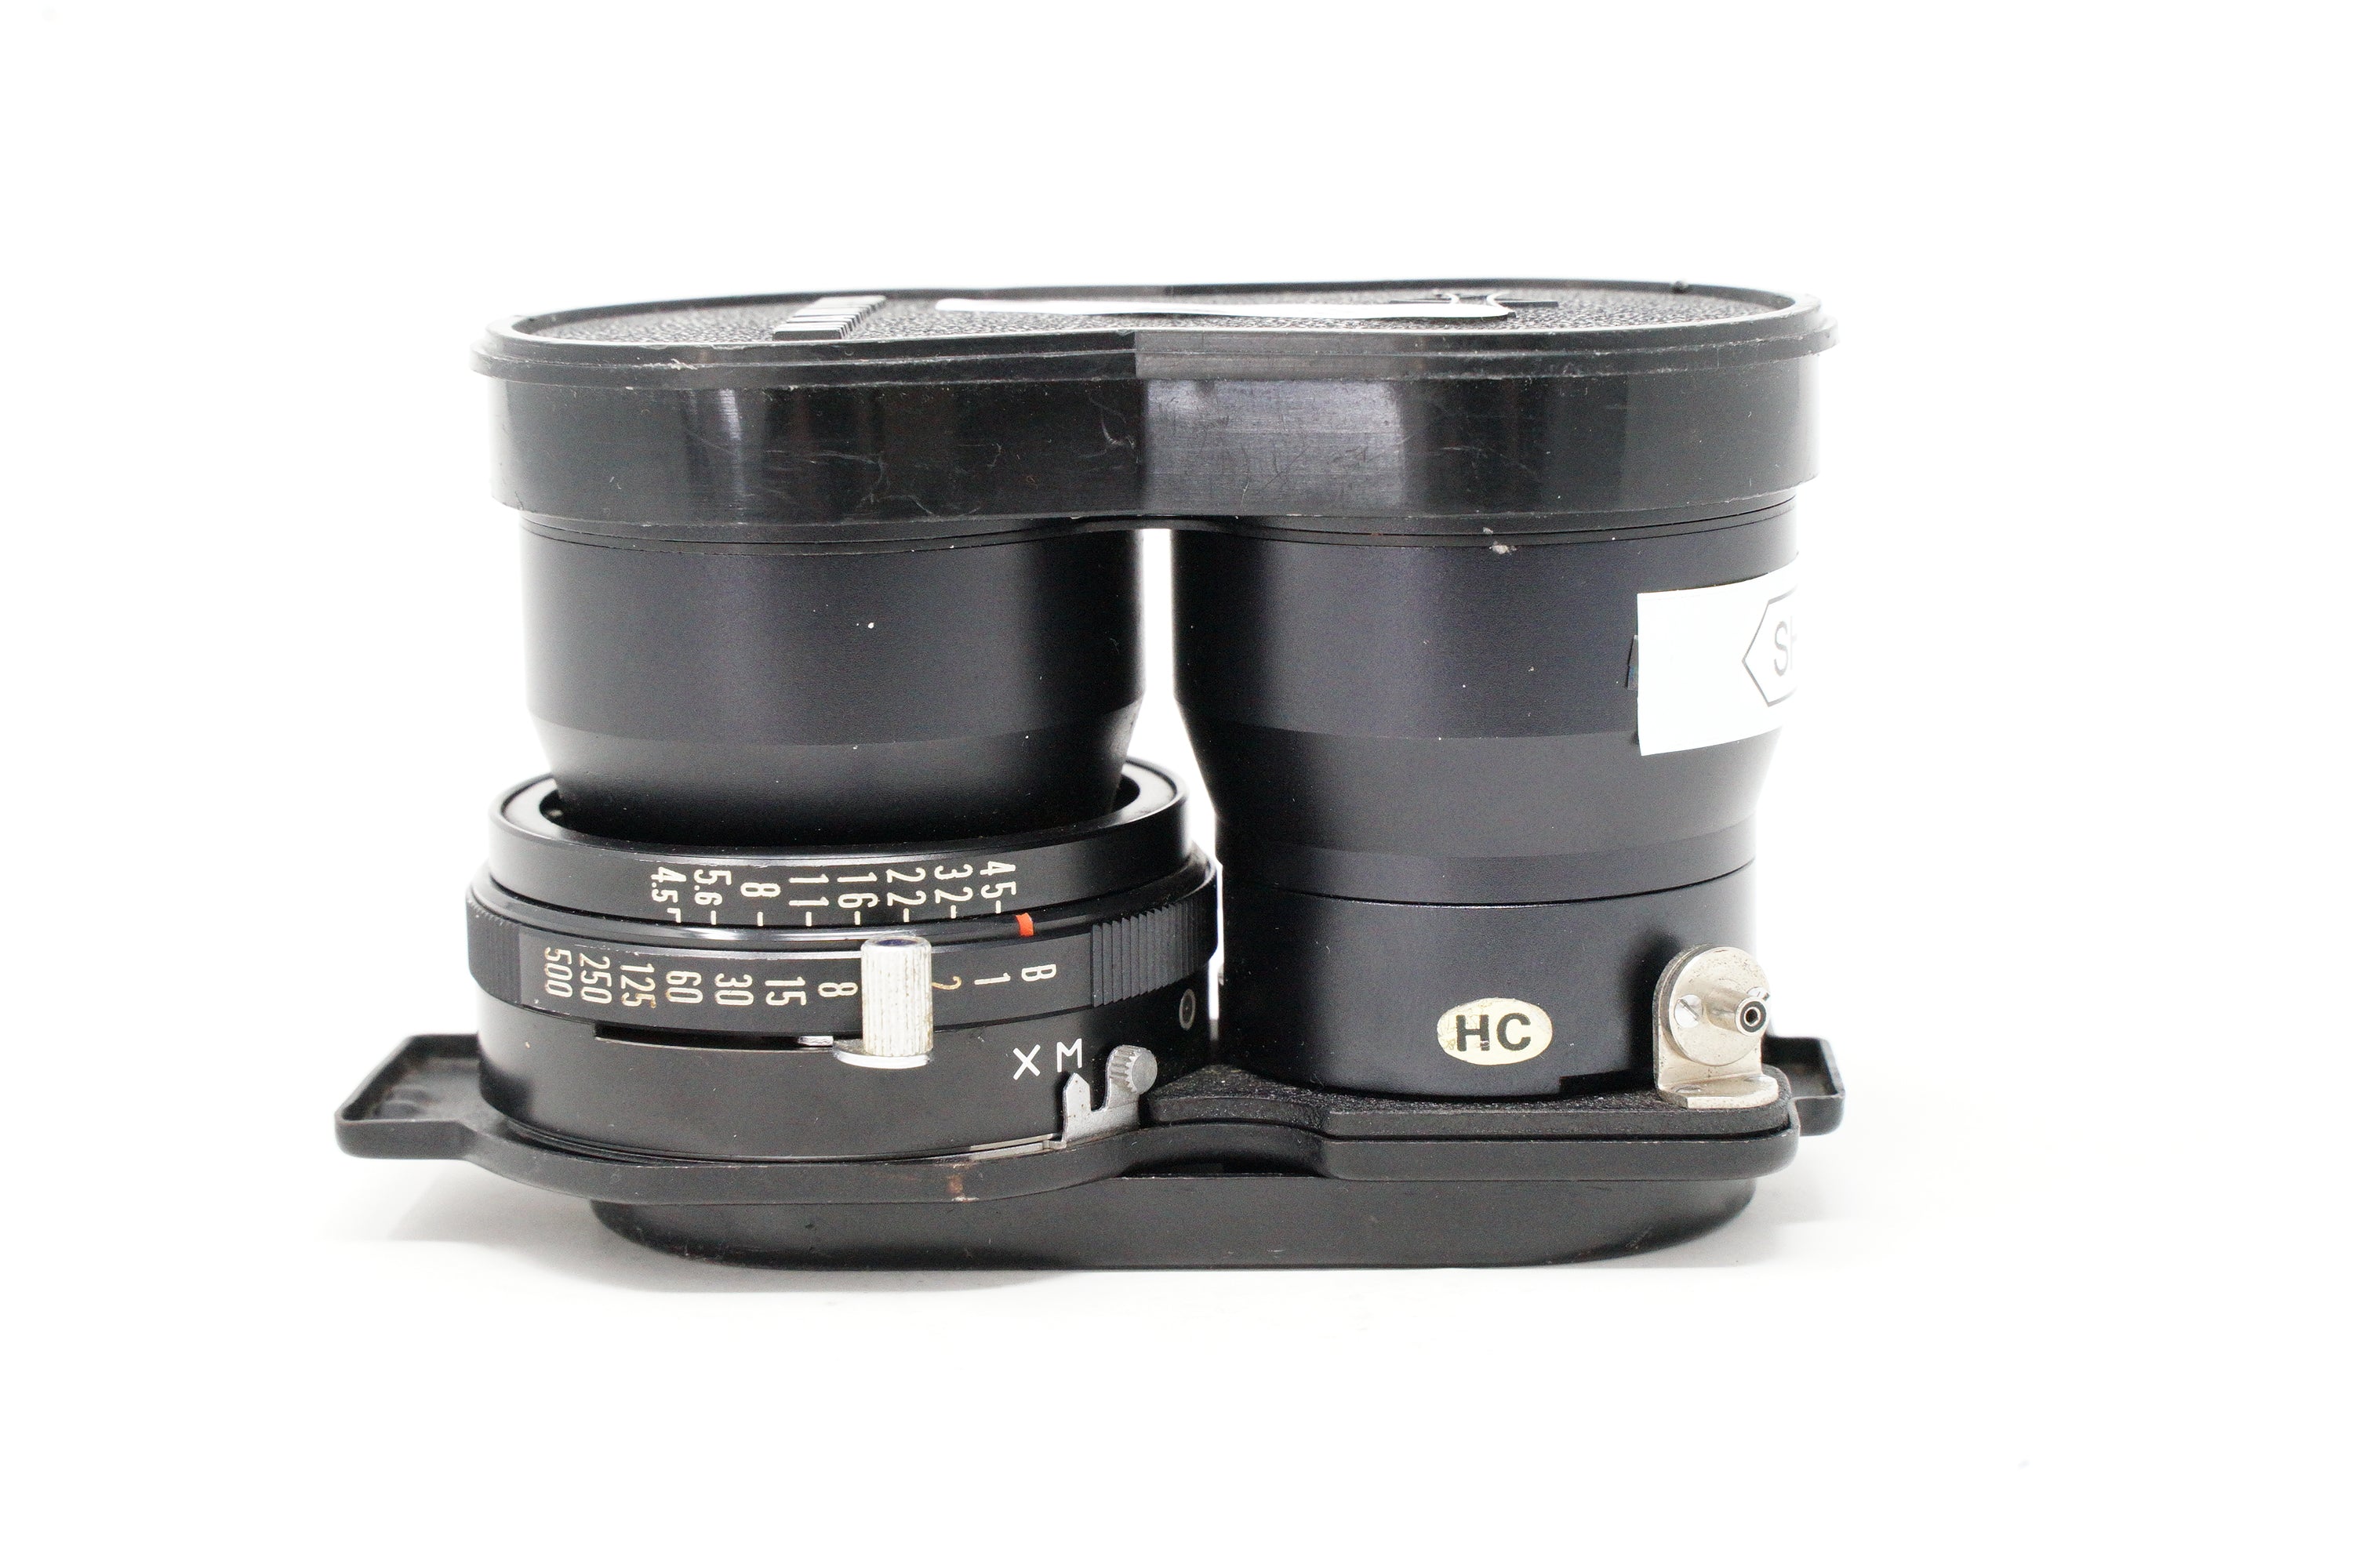 Product Image of Used Mamiya Sekor 135mm F4.5 TLR lens (SH38706)